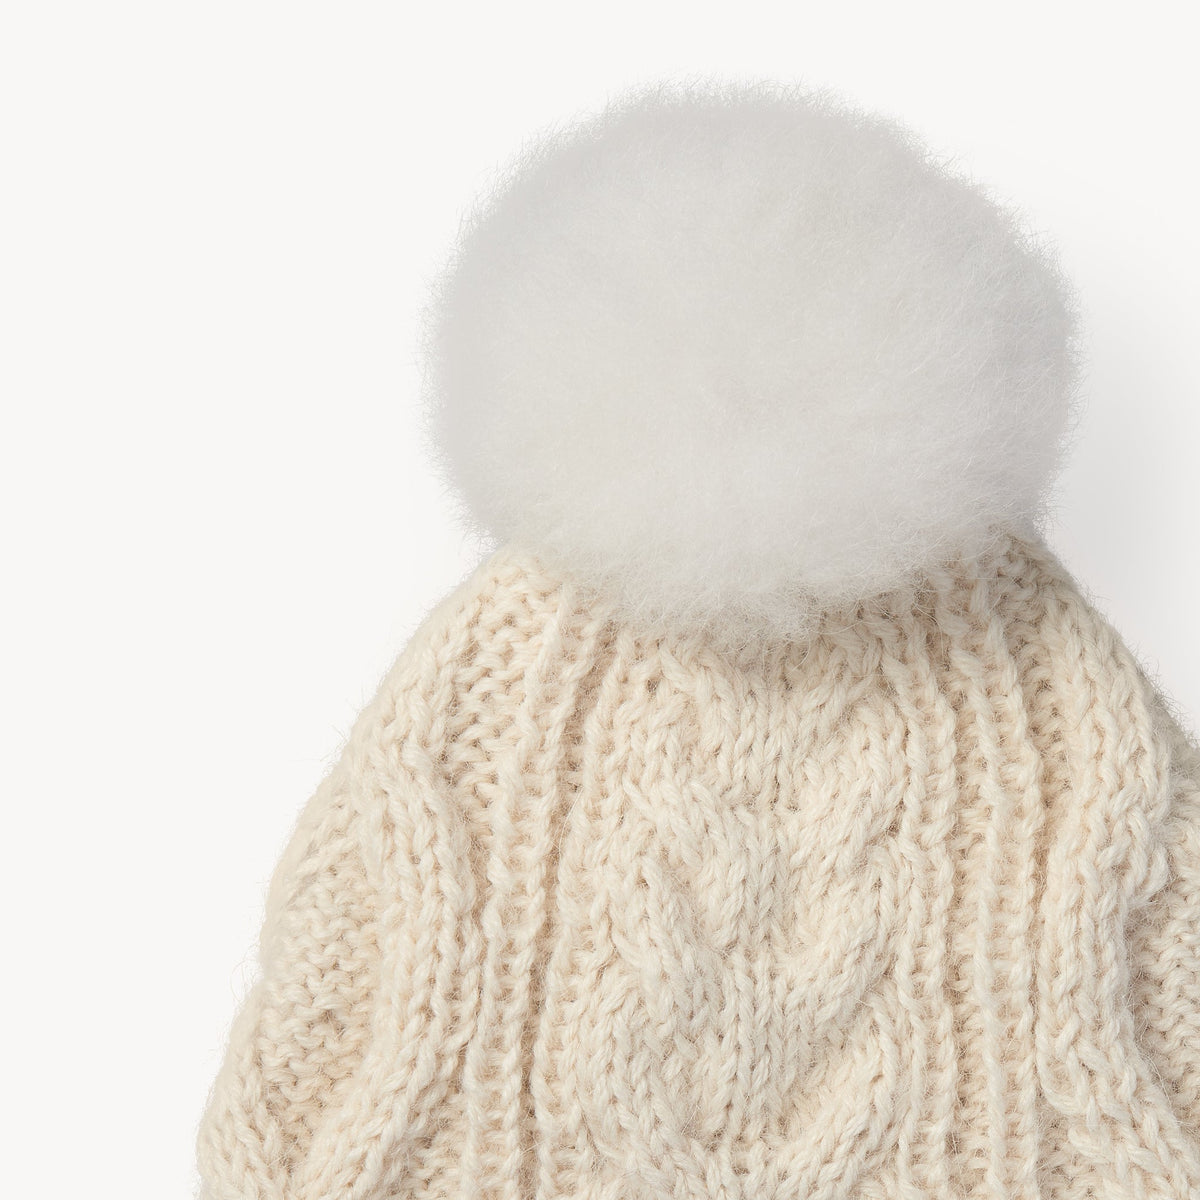 Hand-Knit Alpaca Pom Pom Hat by POKOLOKO